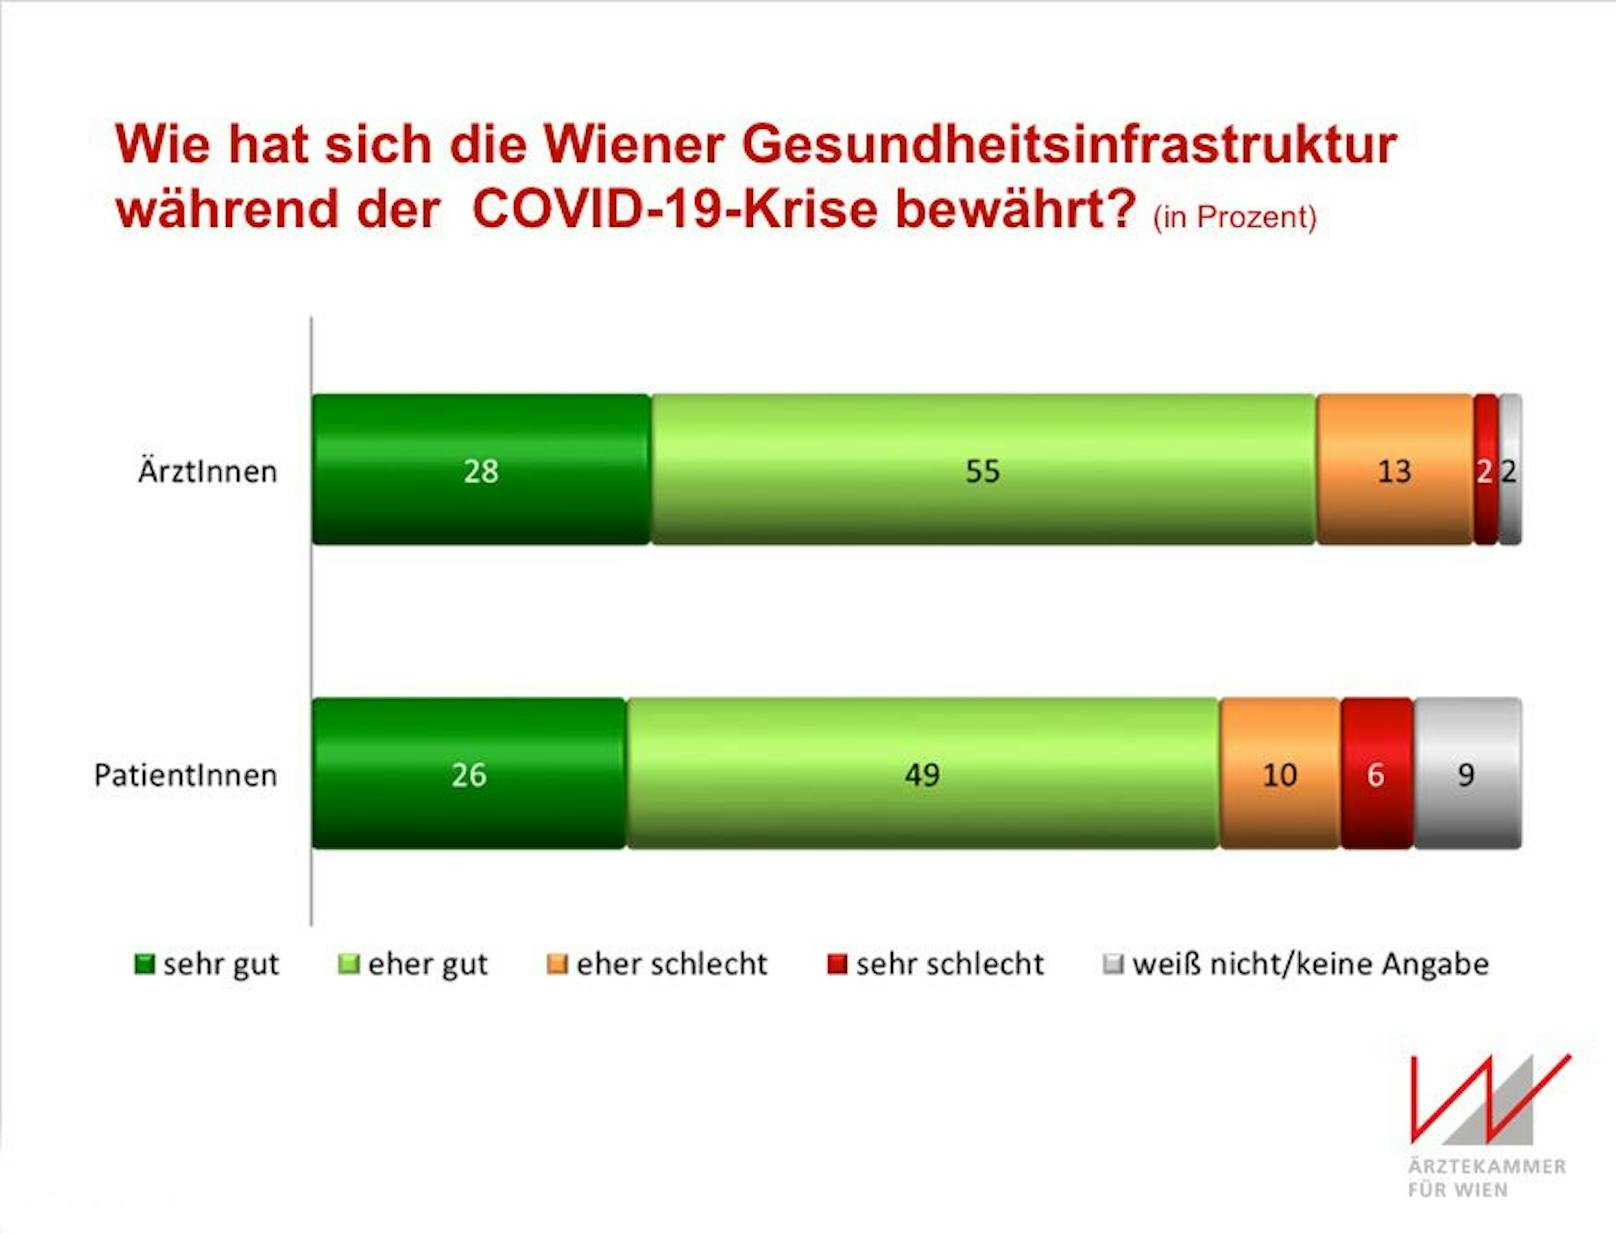 Wiens Ärzte und Patienten sind zufrieden mit der Performance des Wiener Gesundheitswesens: Die klare Mehrheit sagt, es habe sich sehr oder eher gut in der Krise bewährt.